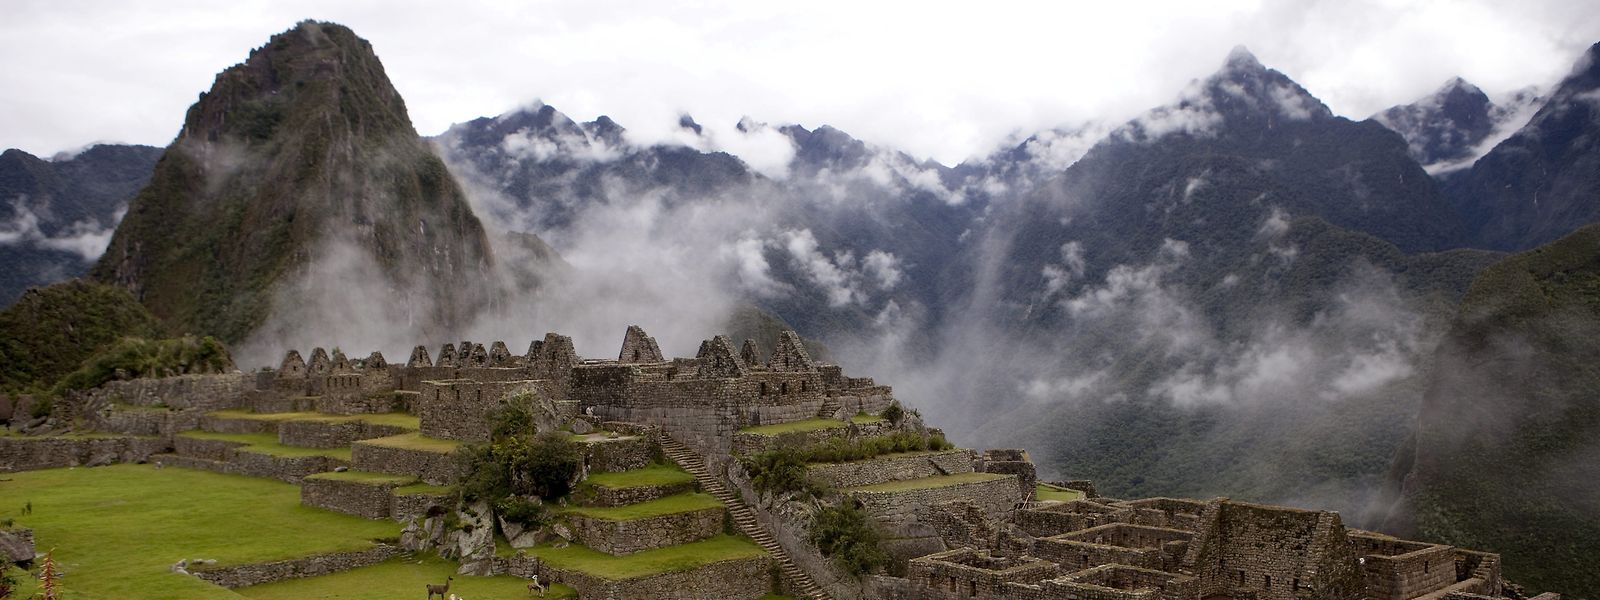 Blick auf die Ruinen von Machu Picchu in Peru.